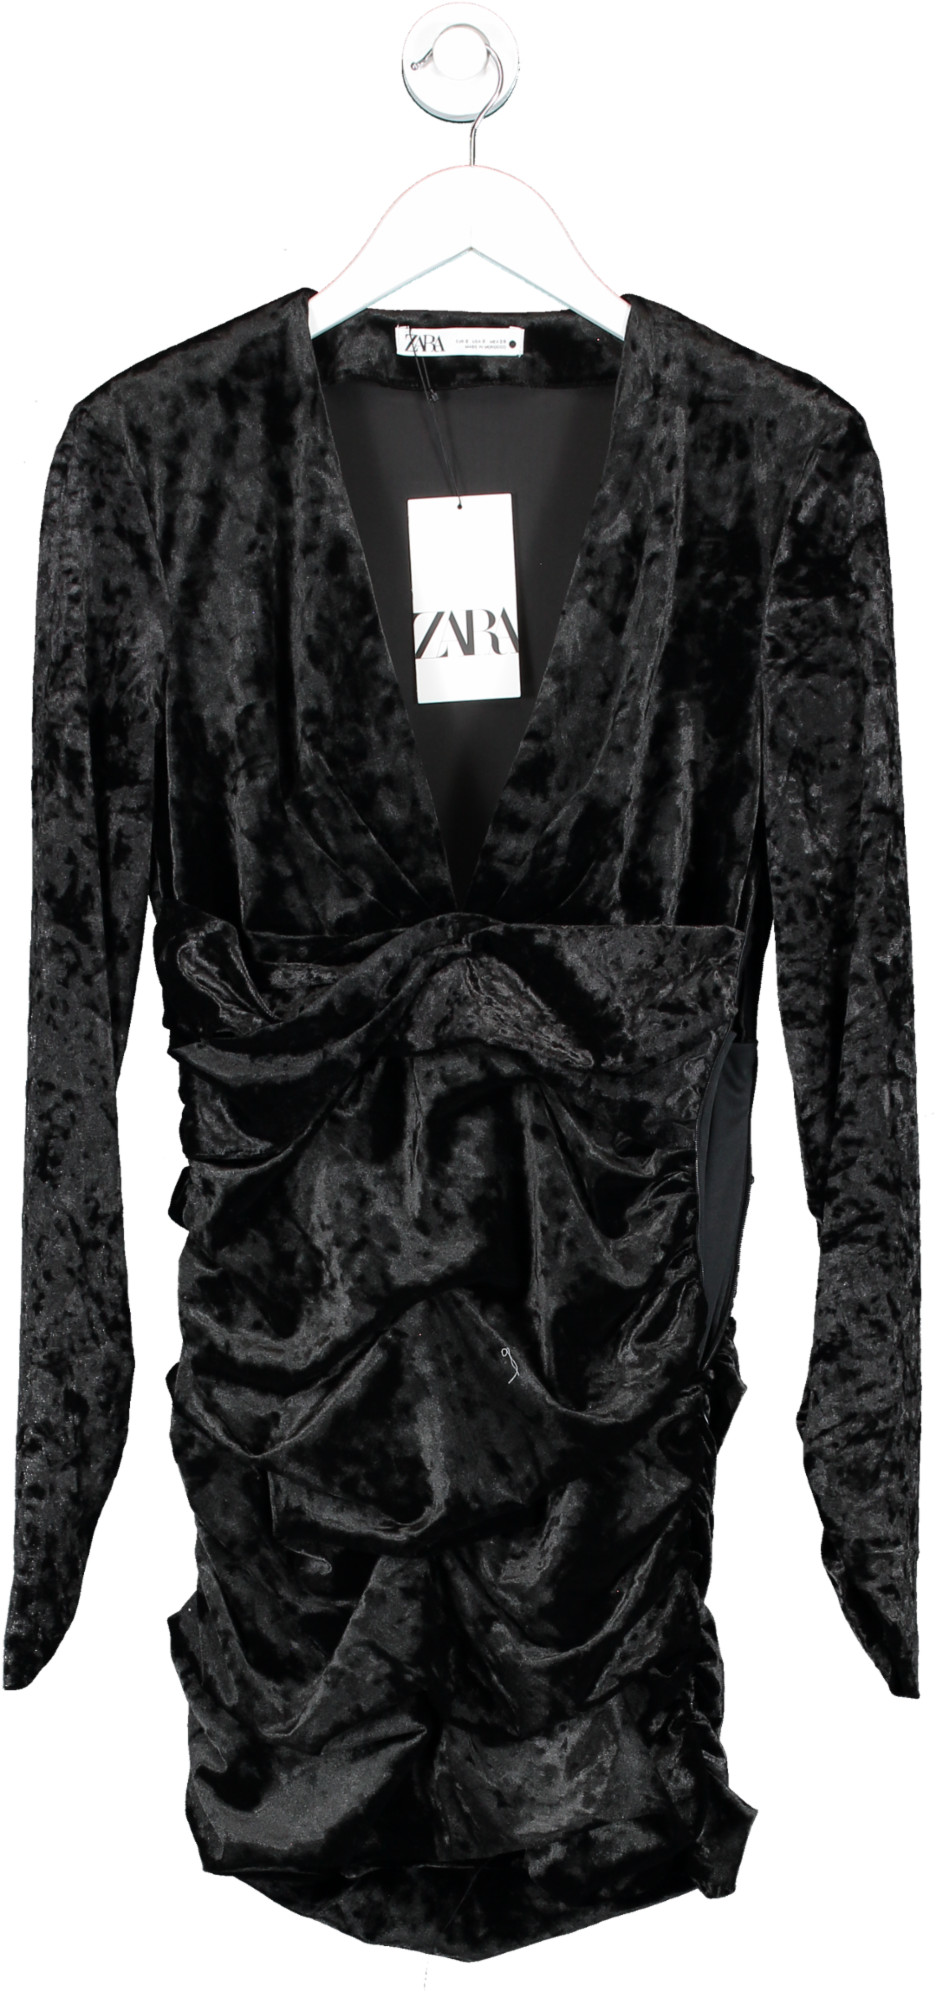 ZARA Black Velvet Long Sleeve, Low Cut Dress UK S